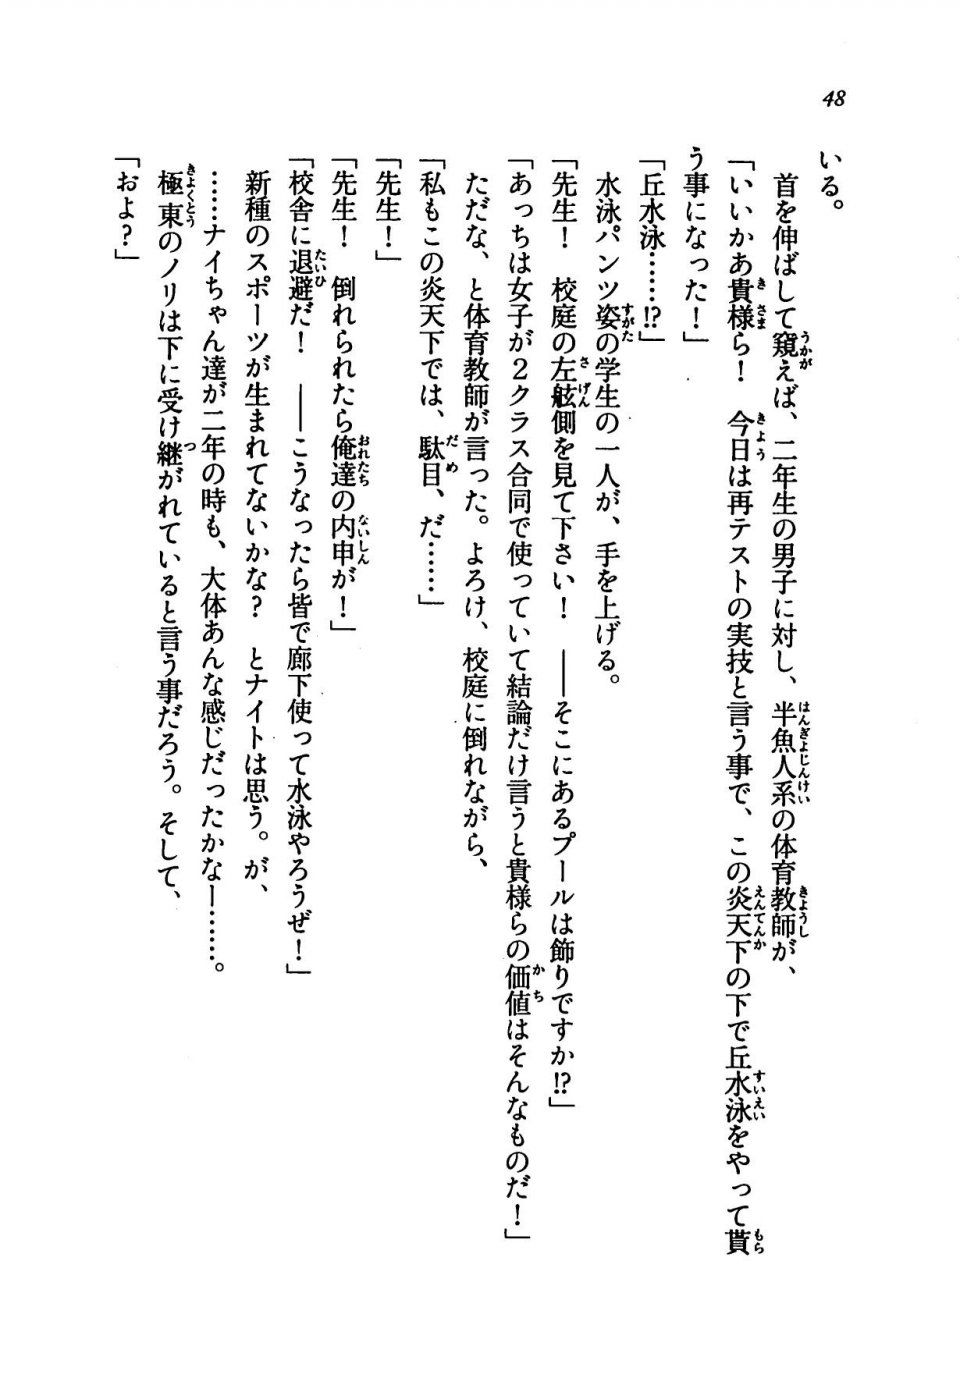 Kyoukai Senjou no Horizon LN Vol 19(8A) - Photo #48